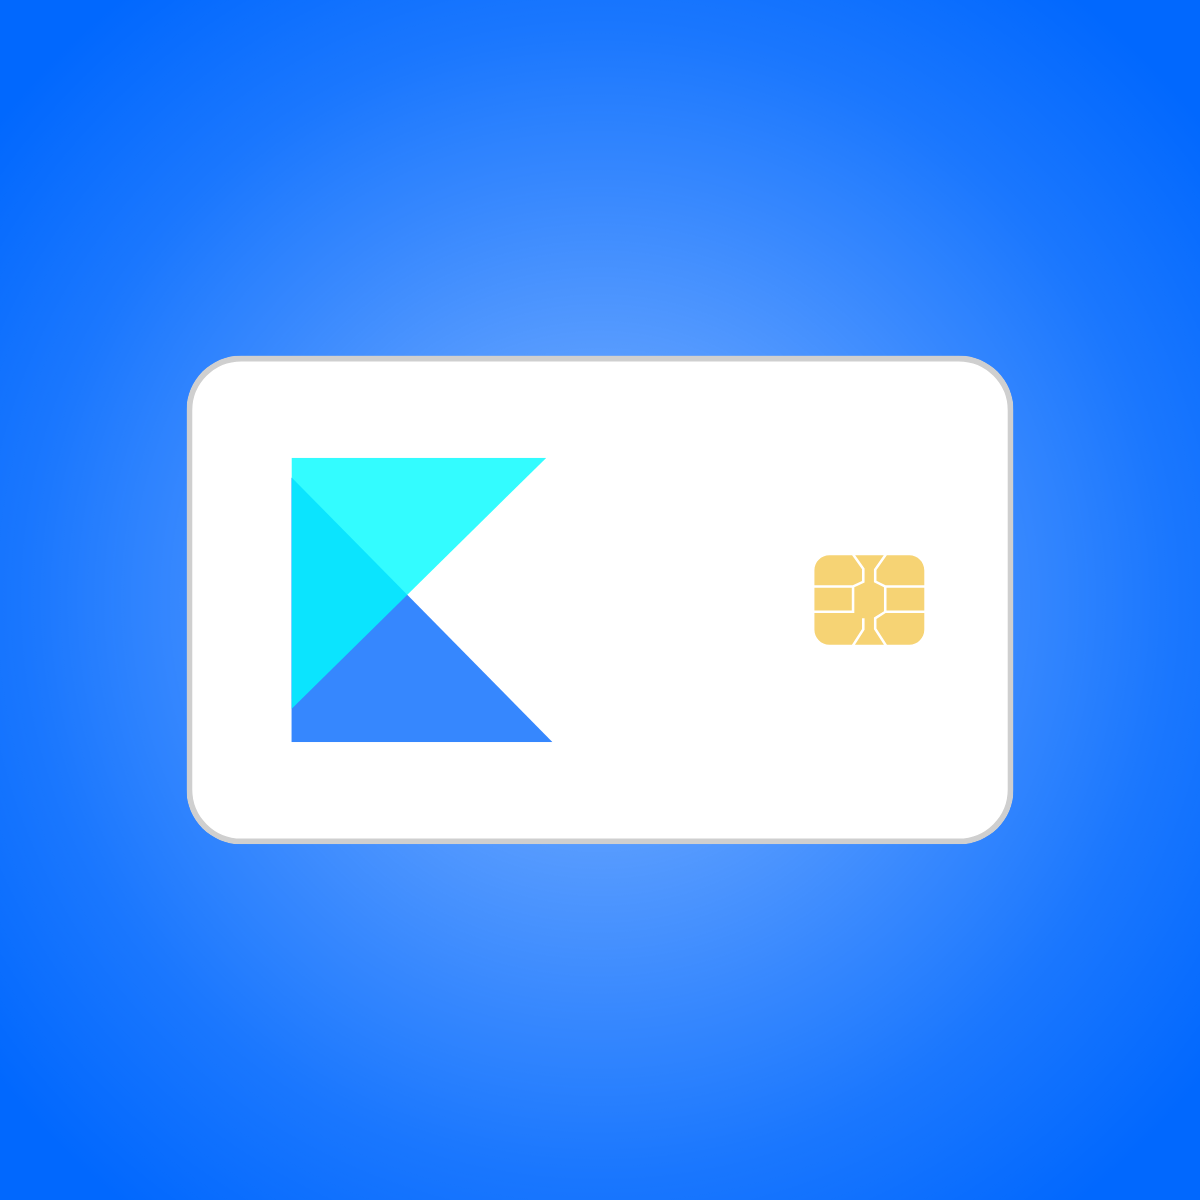 Kip: Sort Hide Payment Methods for Shopify